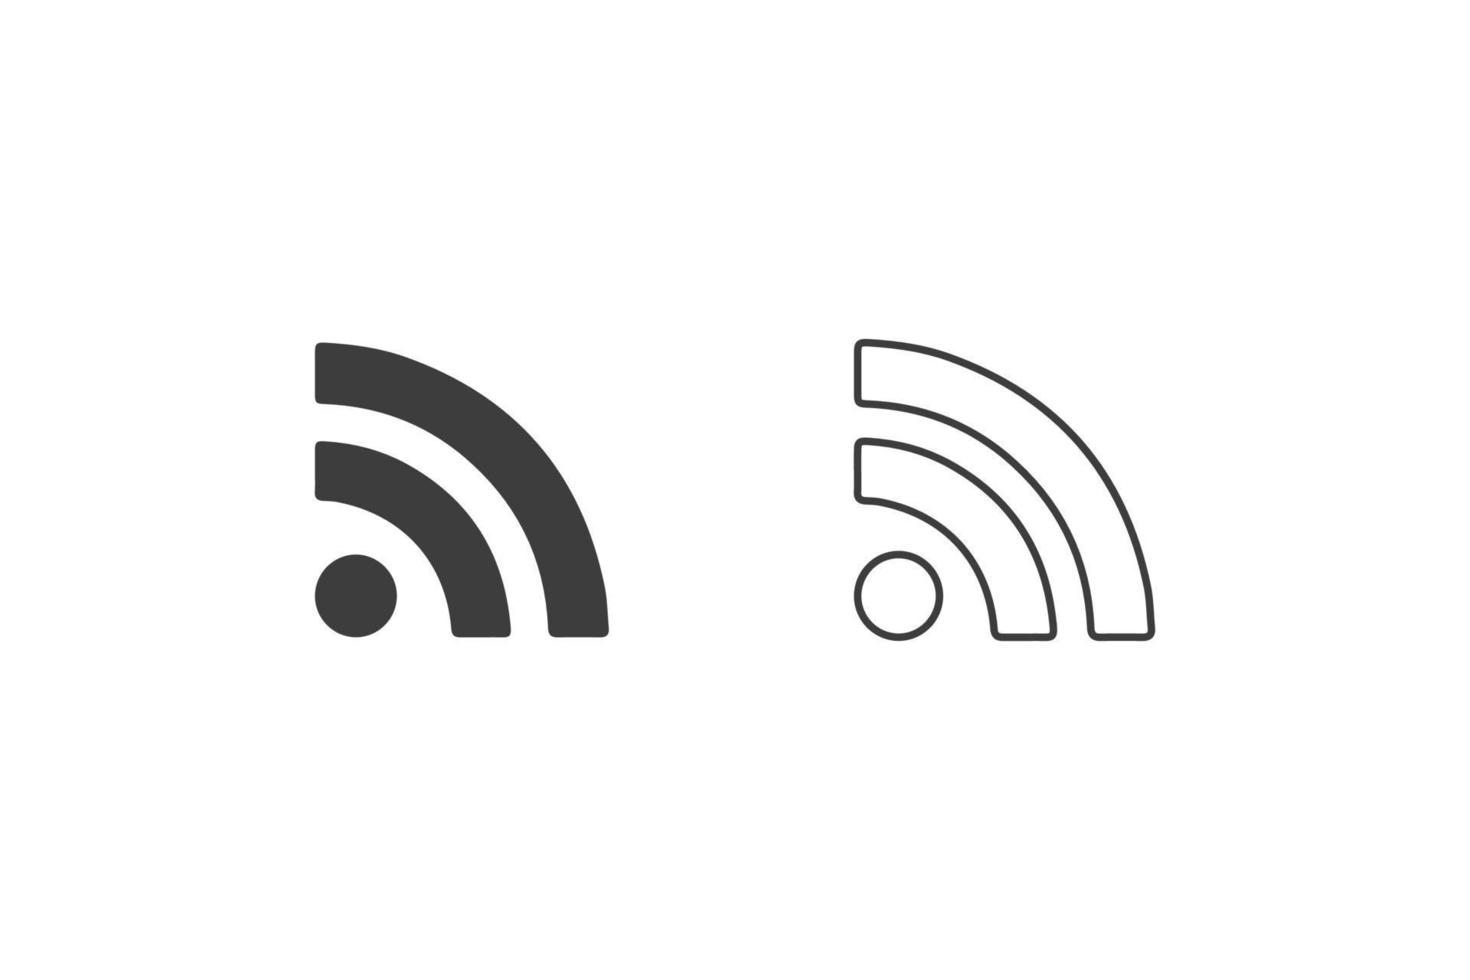 iconos wifi diseño plano o iconos wifi. 2 estilos de iconos wifi aislados en fondo blanco. wifi en el móvil. vector